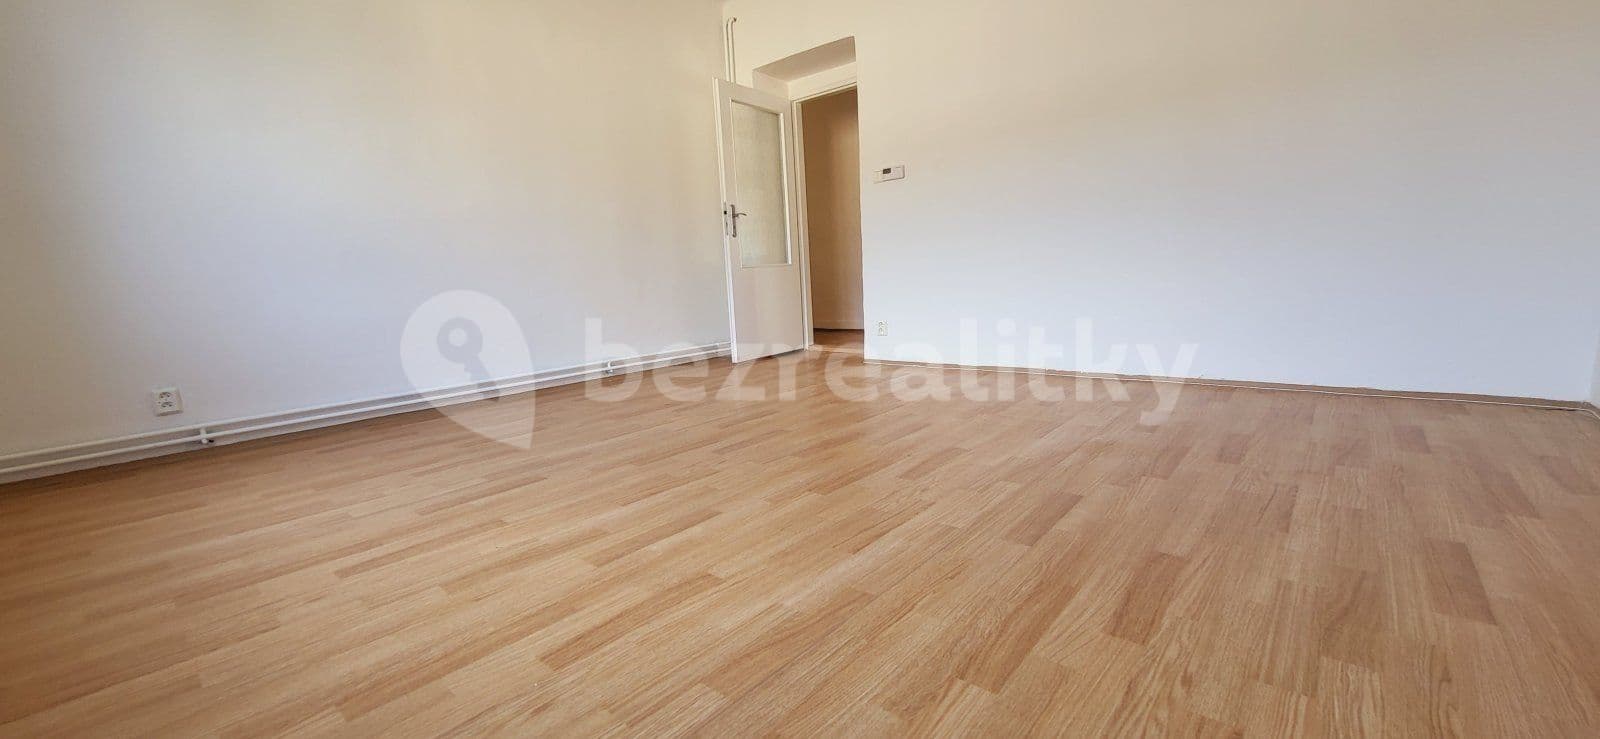 1 bedroom flat to rent, 44 m², Středová, Albrechtice, Moravskoslezský Region